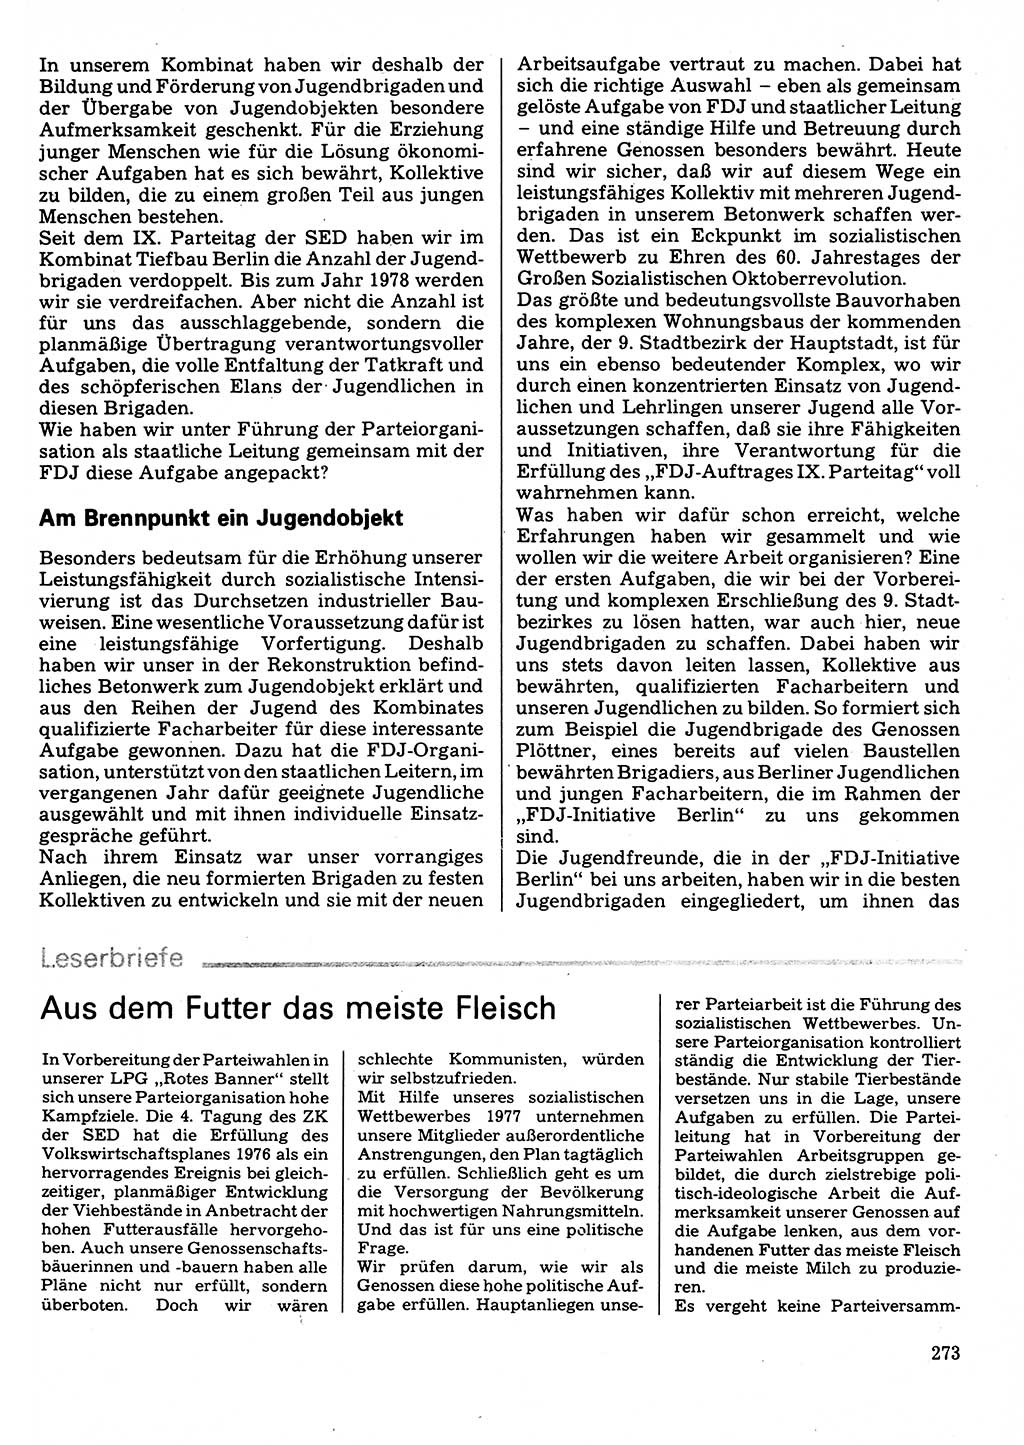 Neuer Weg (NW), Organ des Zentralkomitees (ZK) der SED (Sozialistische Einheitspartei Deutschlands) für Fragen des Parteilebens, 32. Jahrgang [Deutsche Demokratische Republik (DDR)] 1977, Seite 273 (NW ZK SED DDR 1977, S. 273)